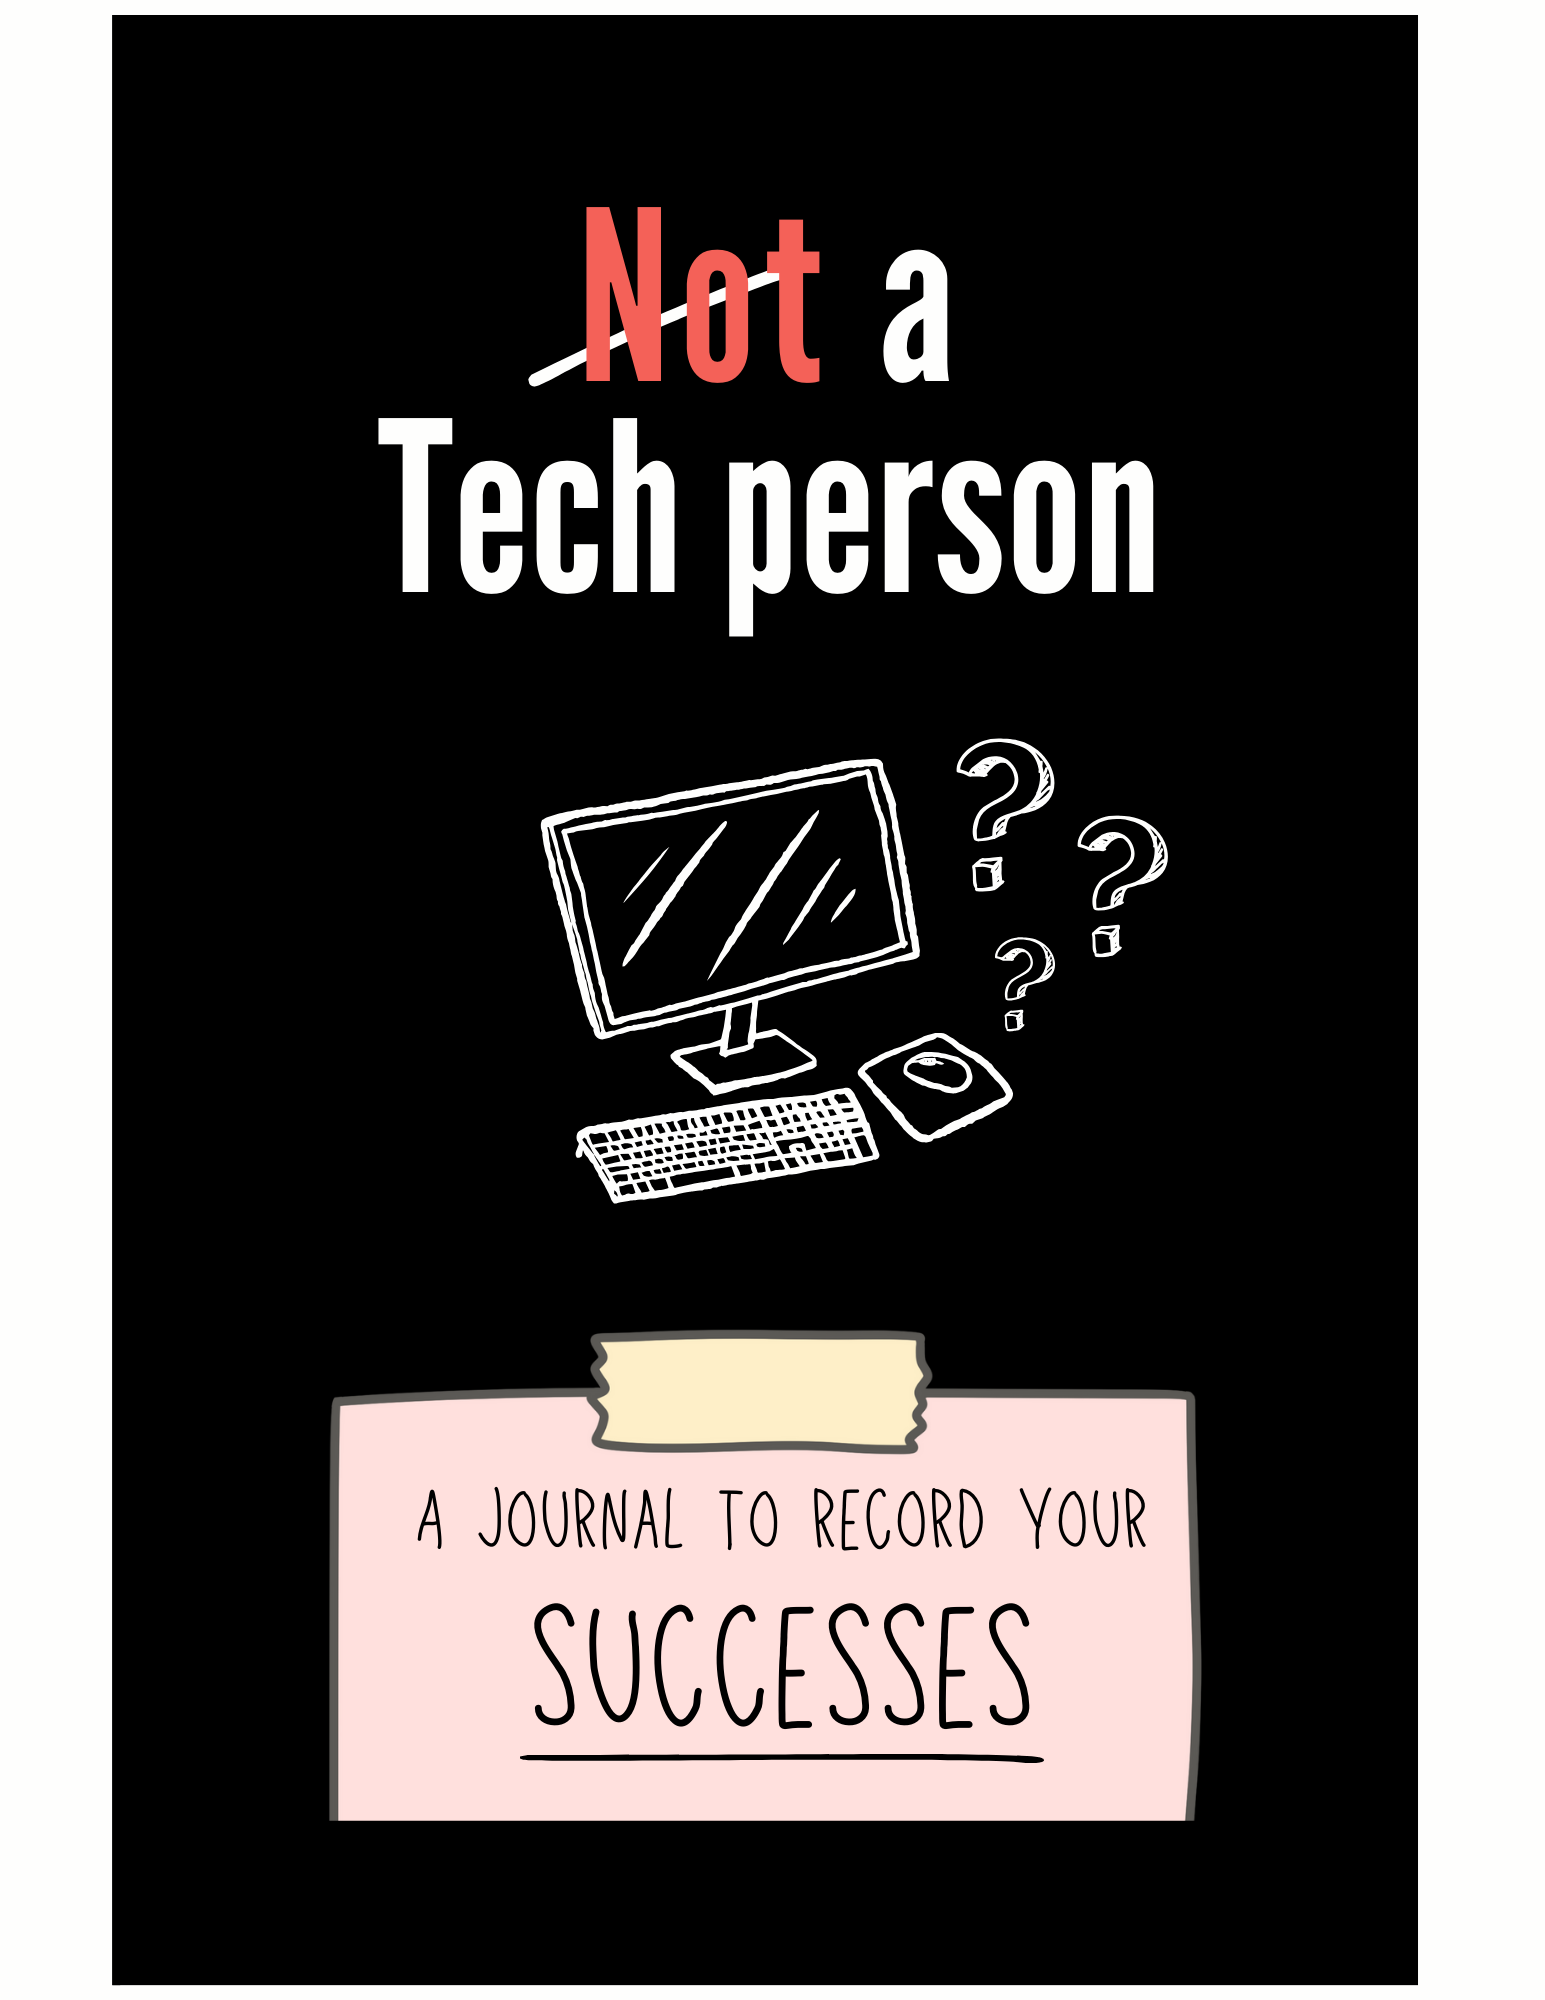 Not-a-tech-person-Journal-2